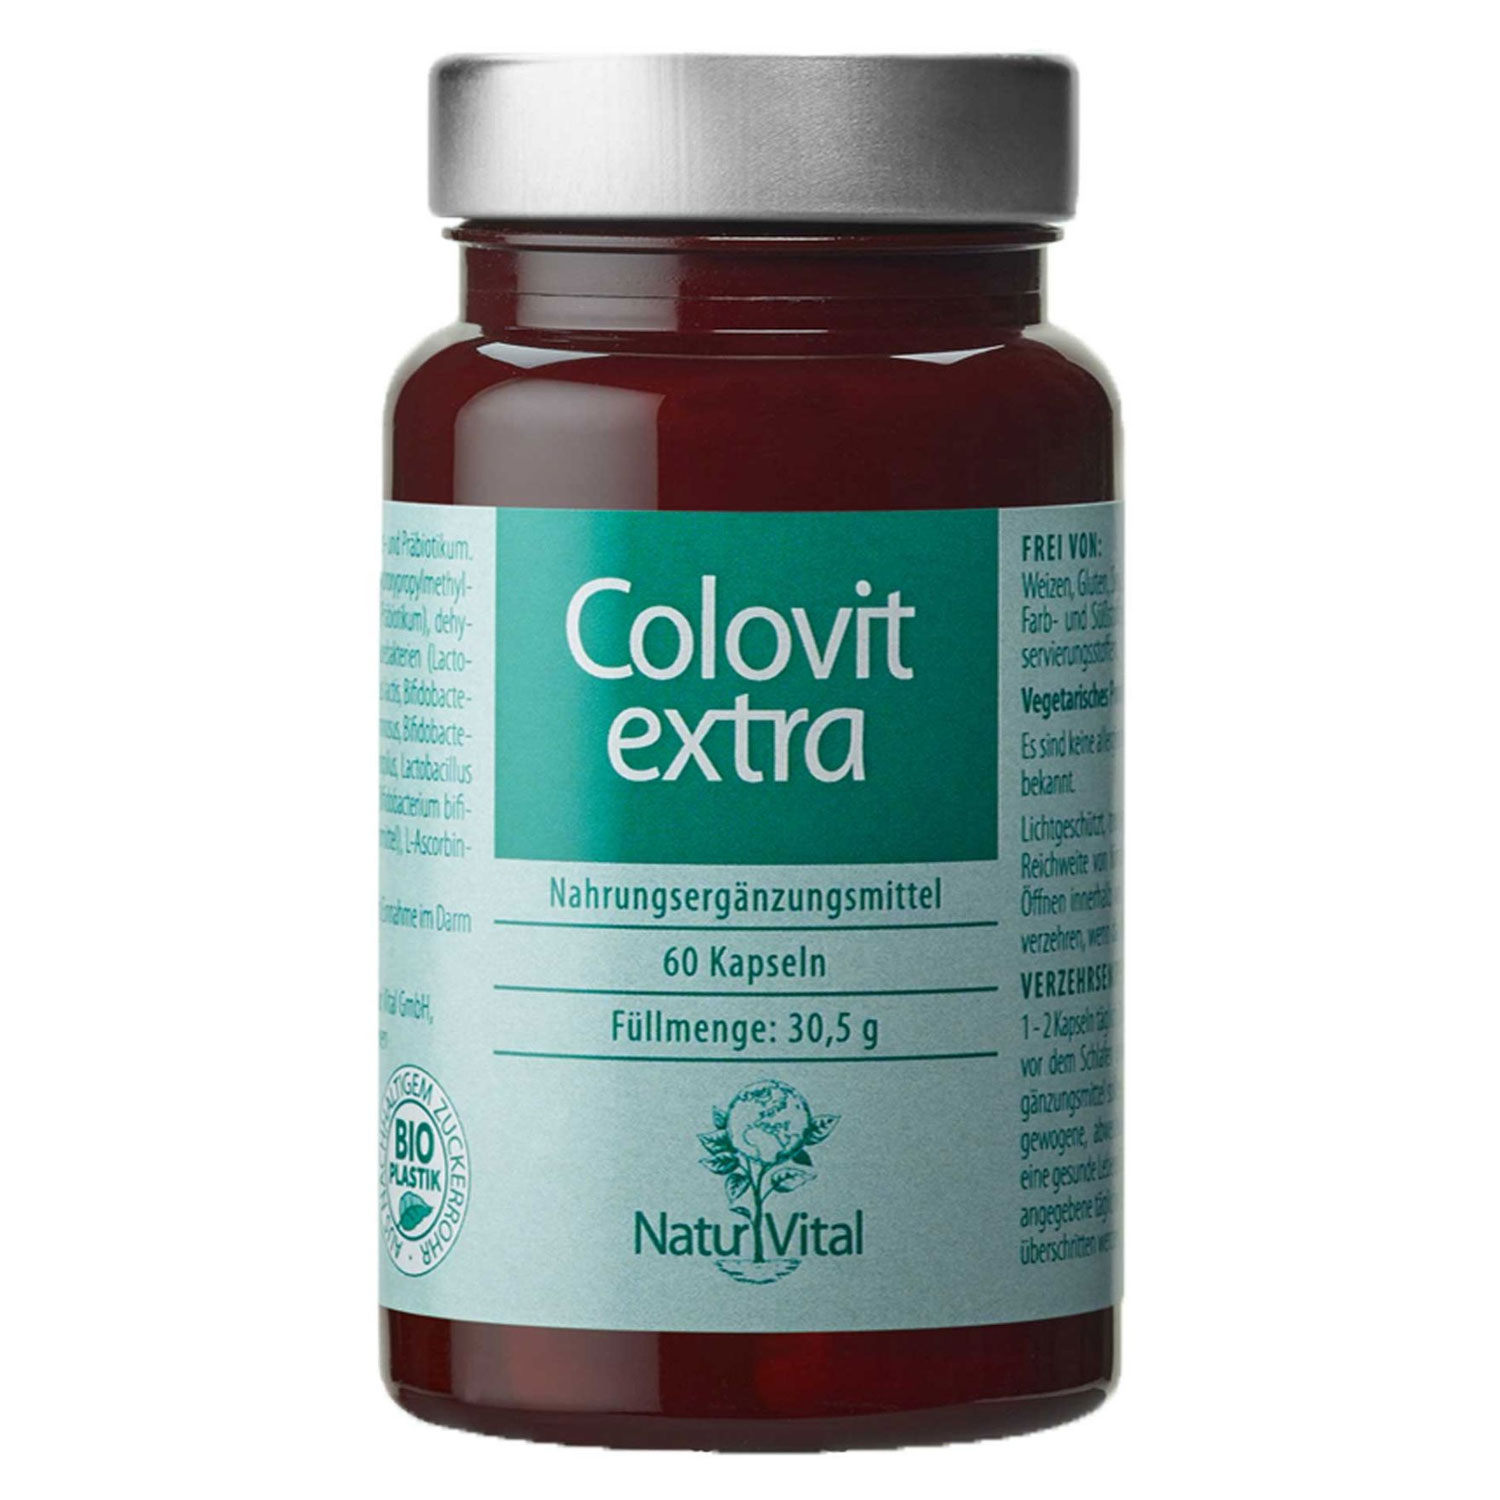 Natur Vital - Colovit extra - 60 Kapseln